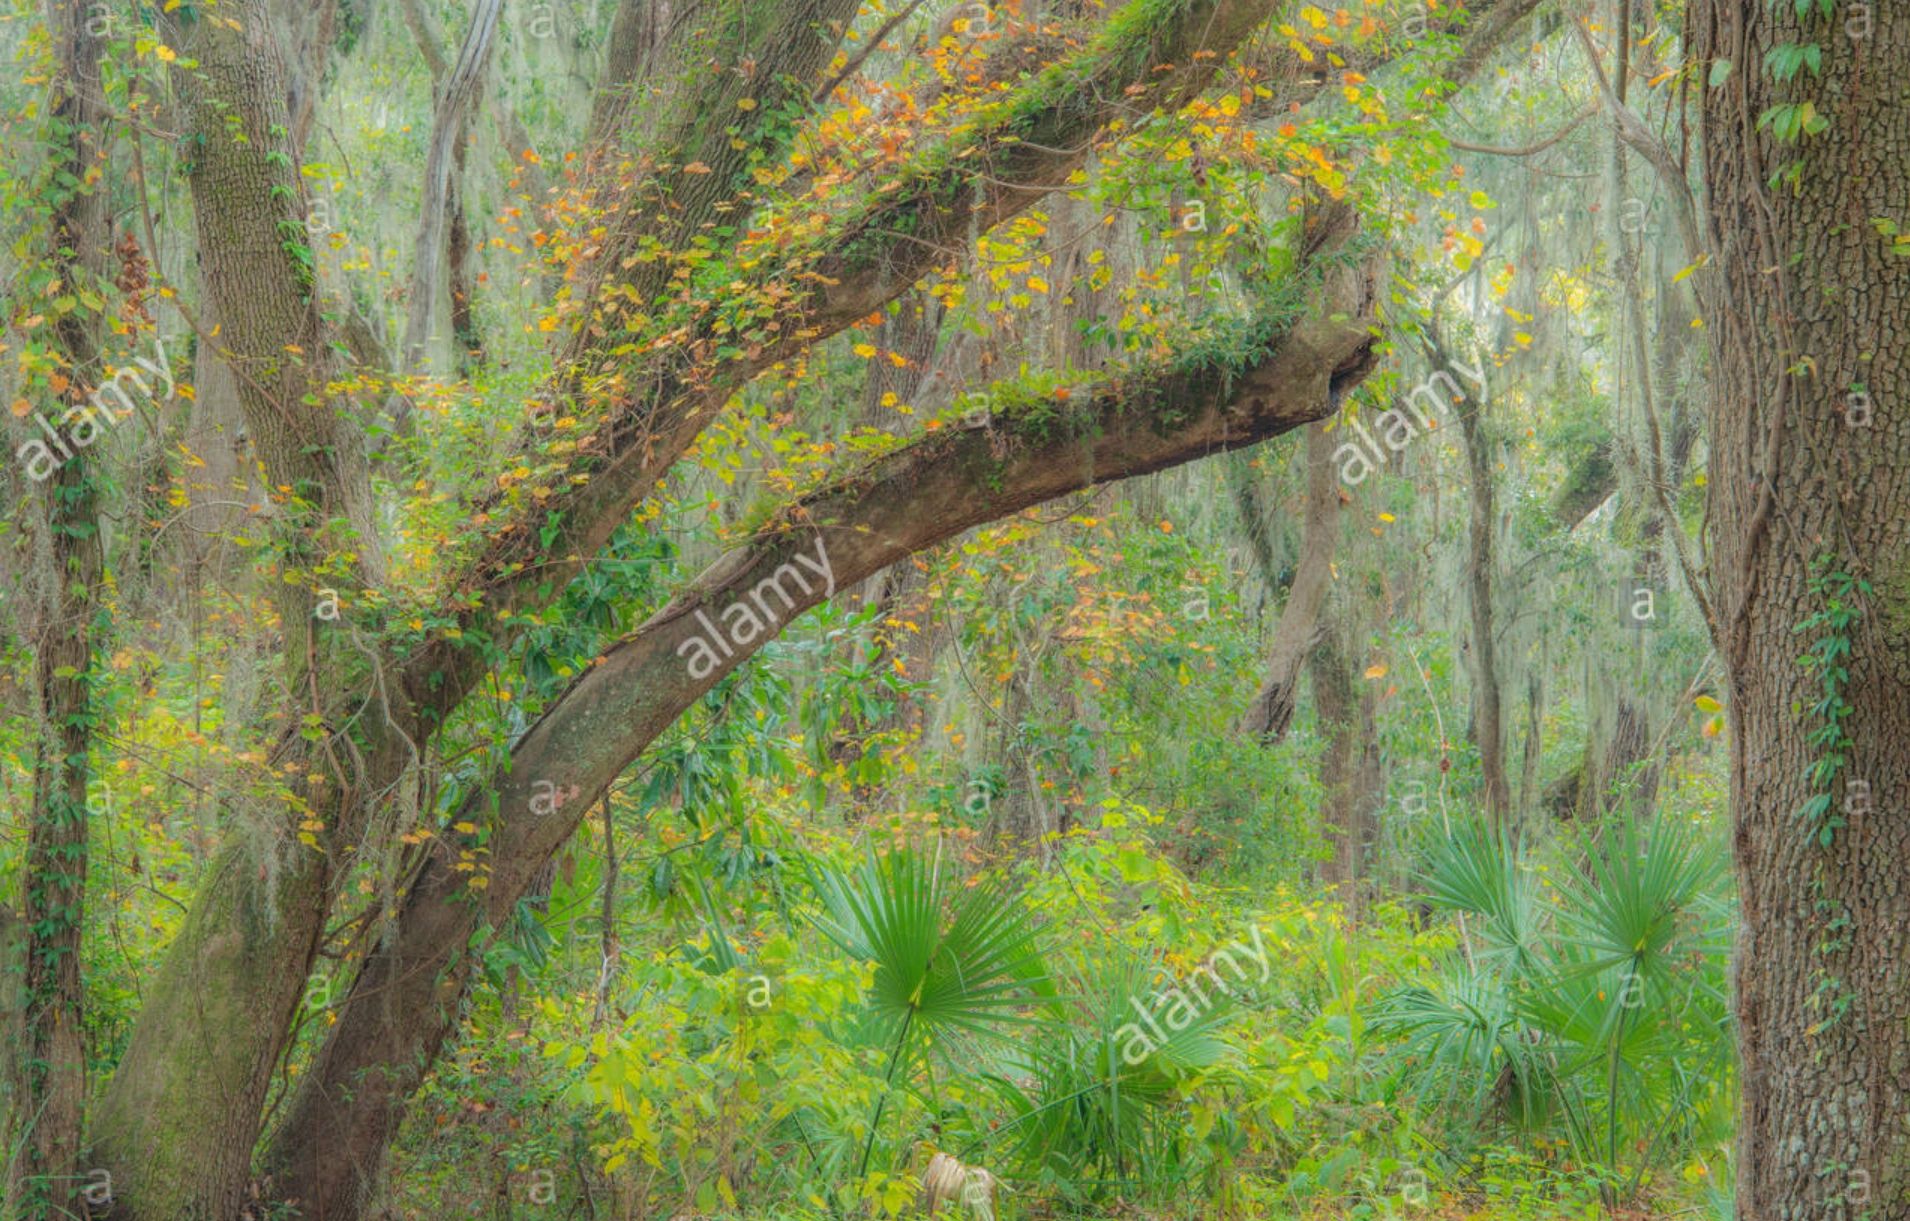 Live Oak trees with epiphytes, Resurrection fern and Spanish moss, S. Carolina, USA